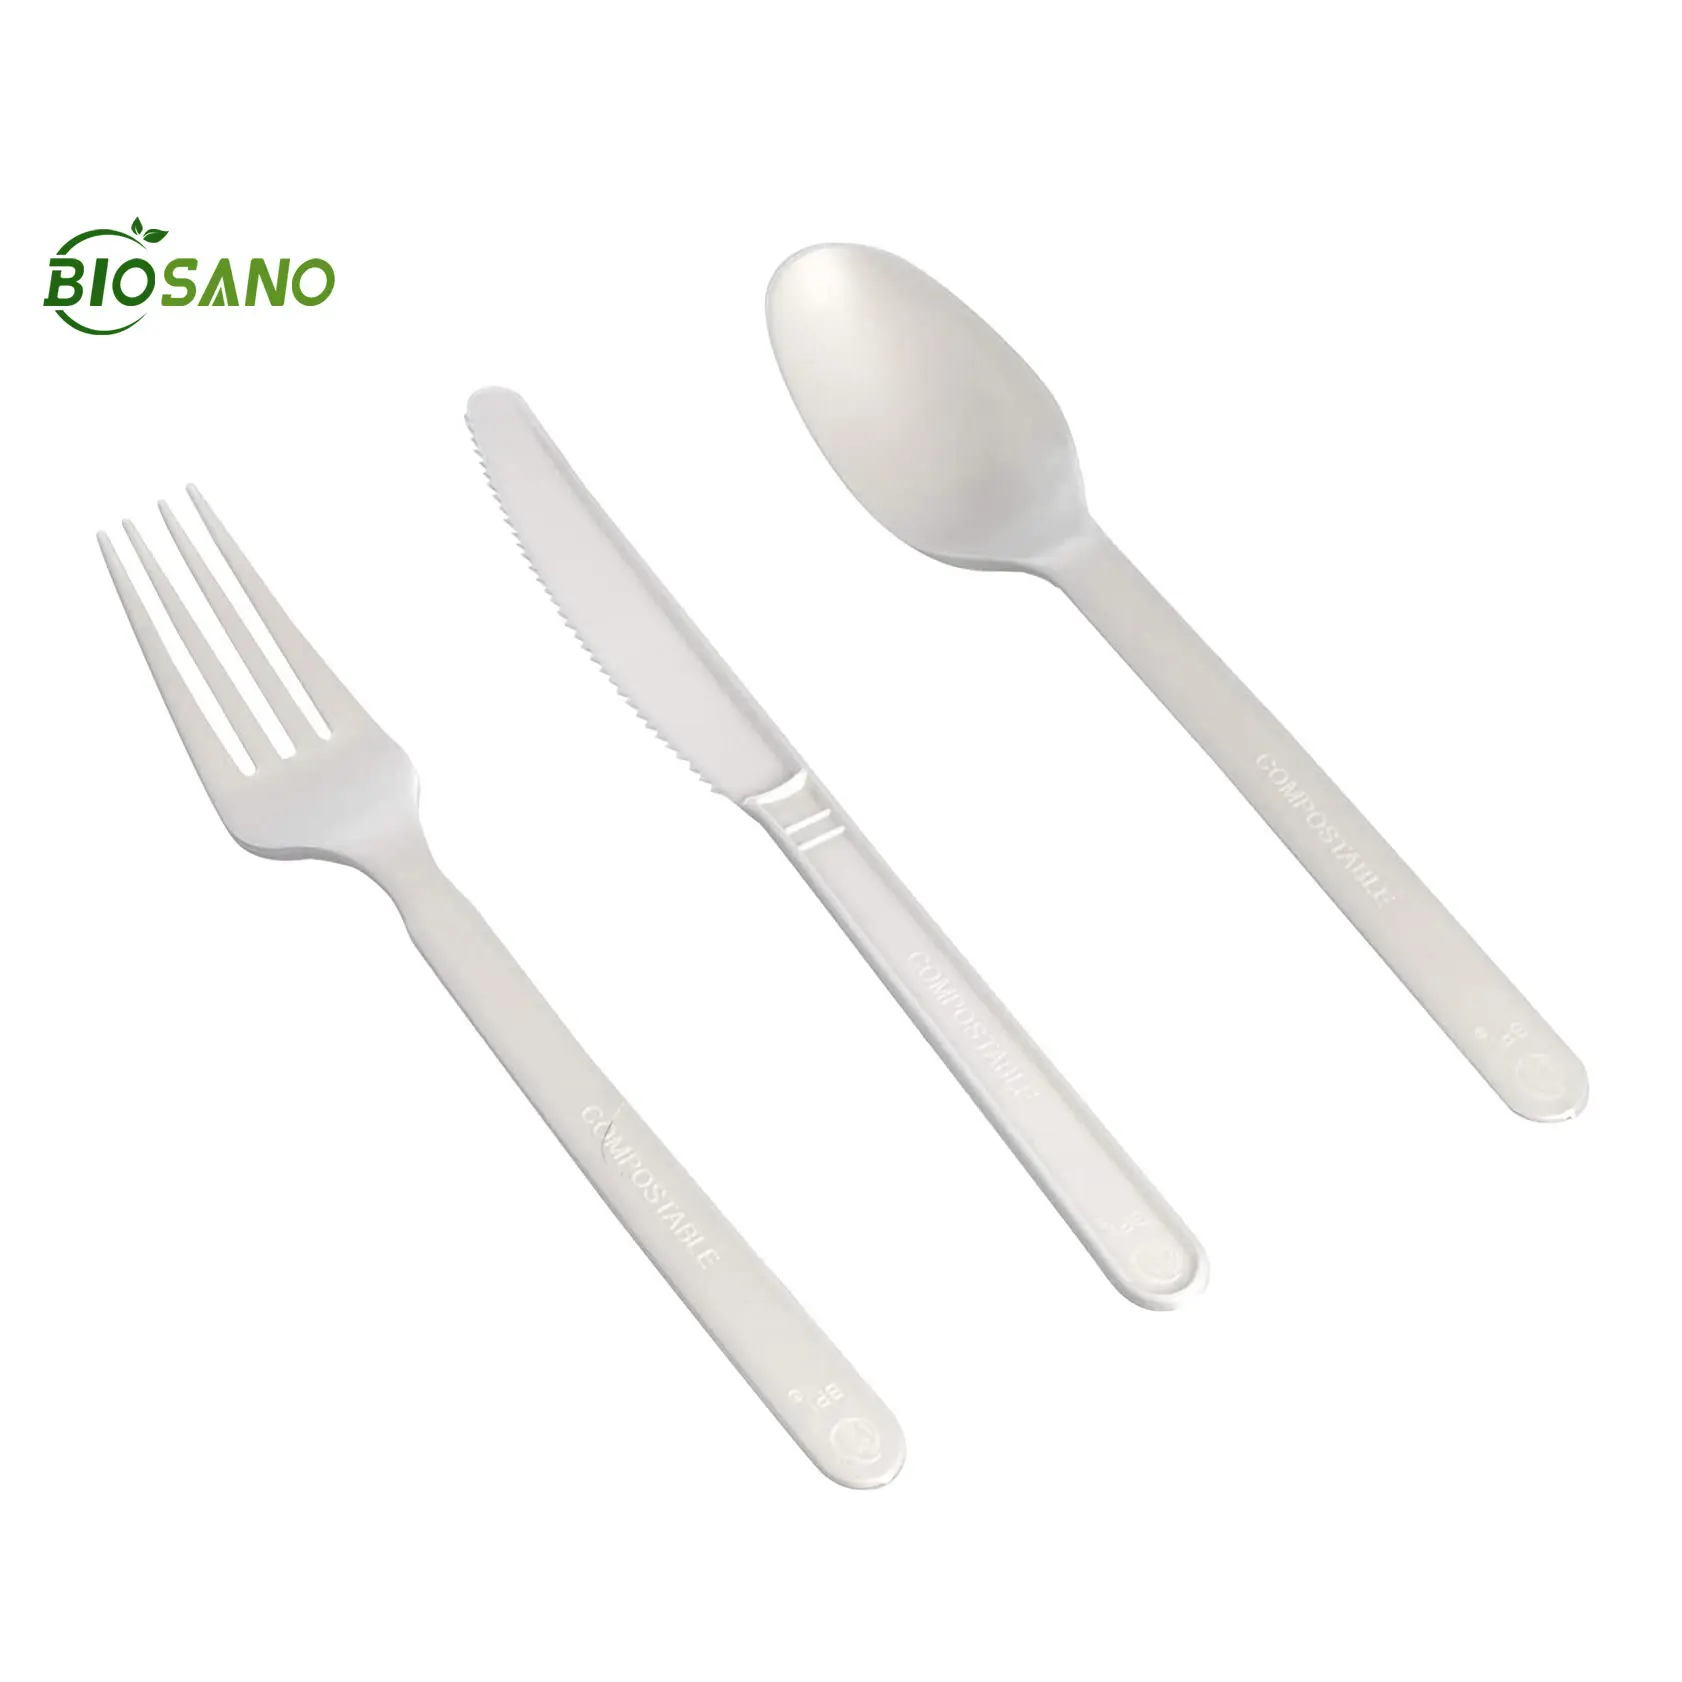 Biosano placa de gelo biodegradável, plástico descartável mini placa de casamento sorvete colher garfo aparelhos de jantar & utensílios de mesa